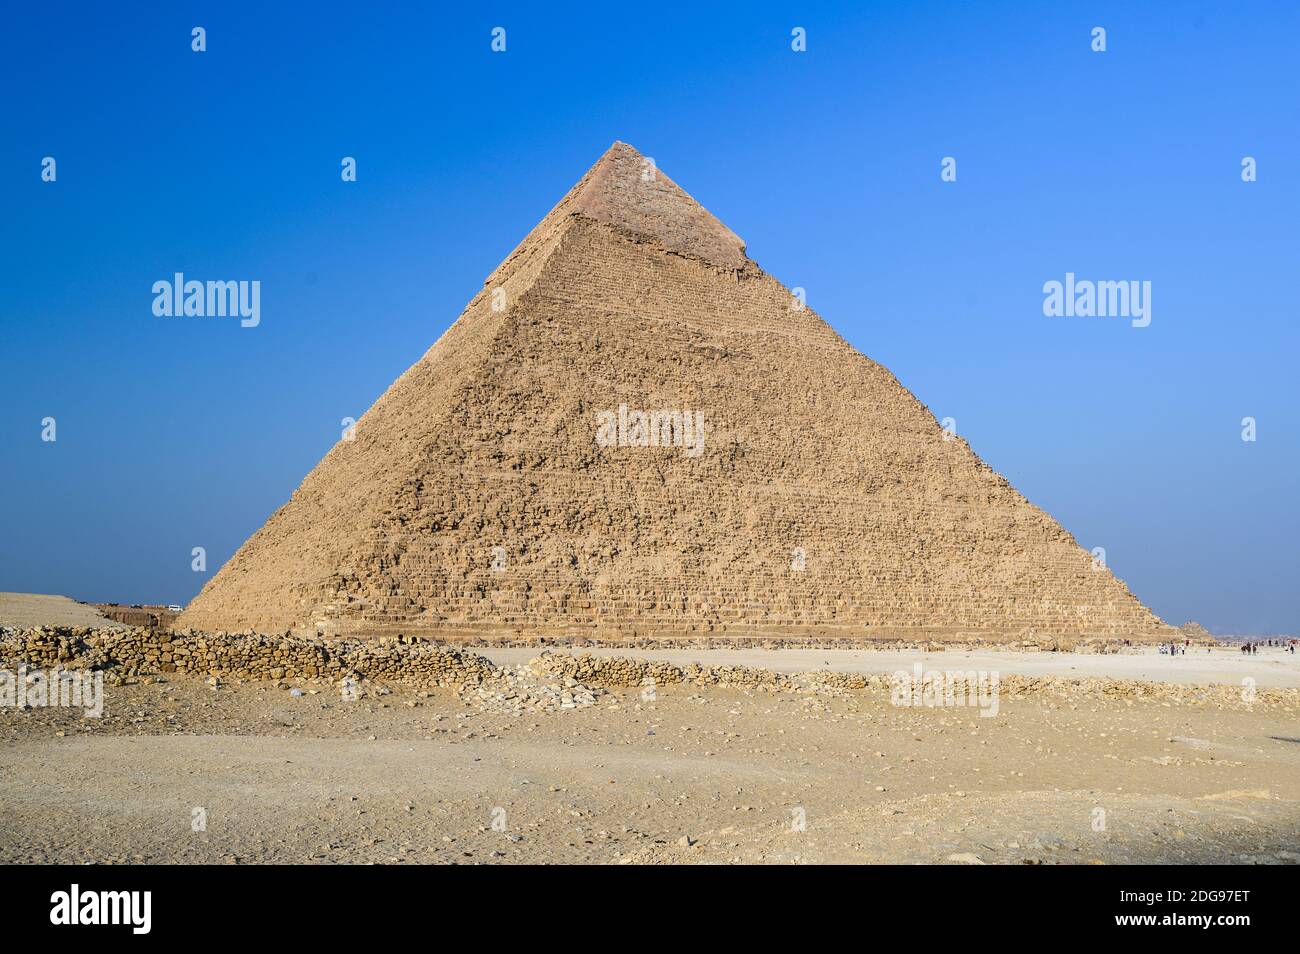 Pirámide de Khafre, complejo Pirámide de Giza, Giza, el Cairo, Egipto Foto de stock